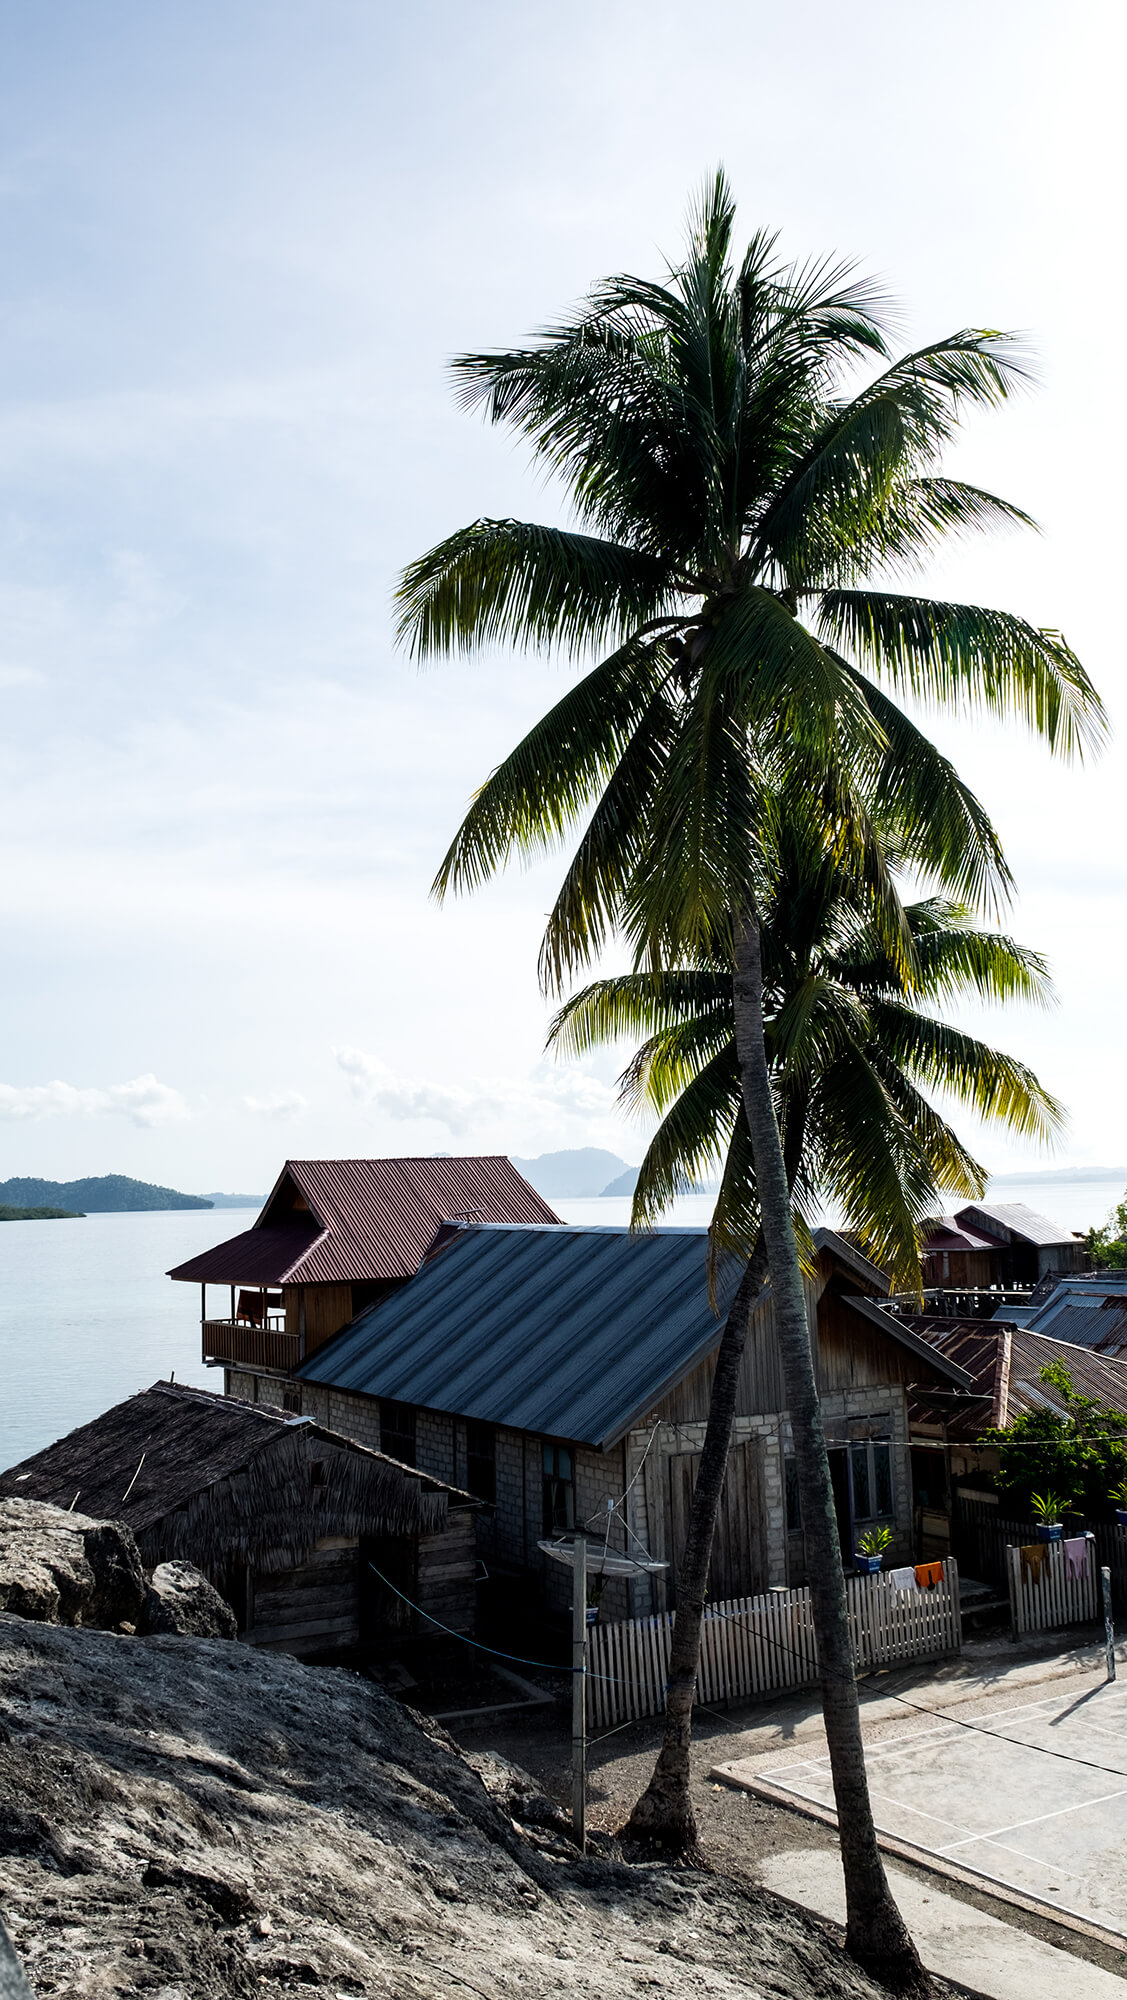 Palmera presidiendo una aldea bajau en las islas Togean de Sulawesi